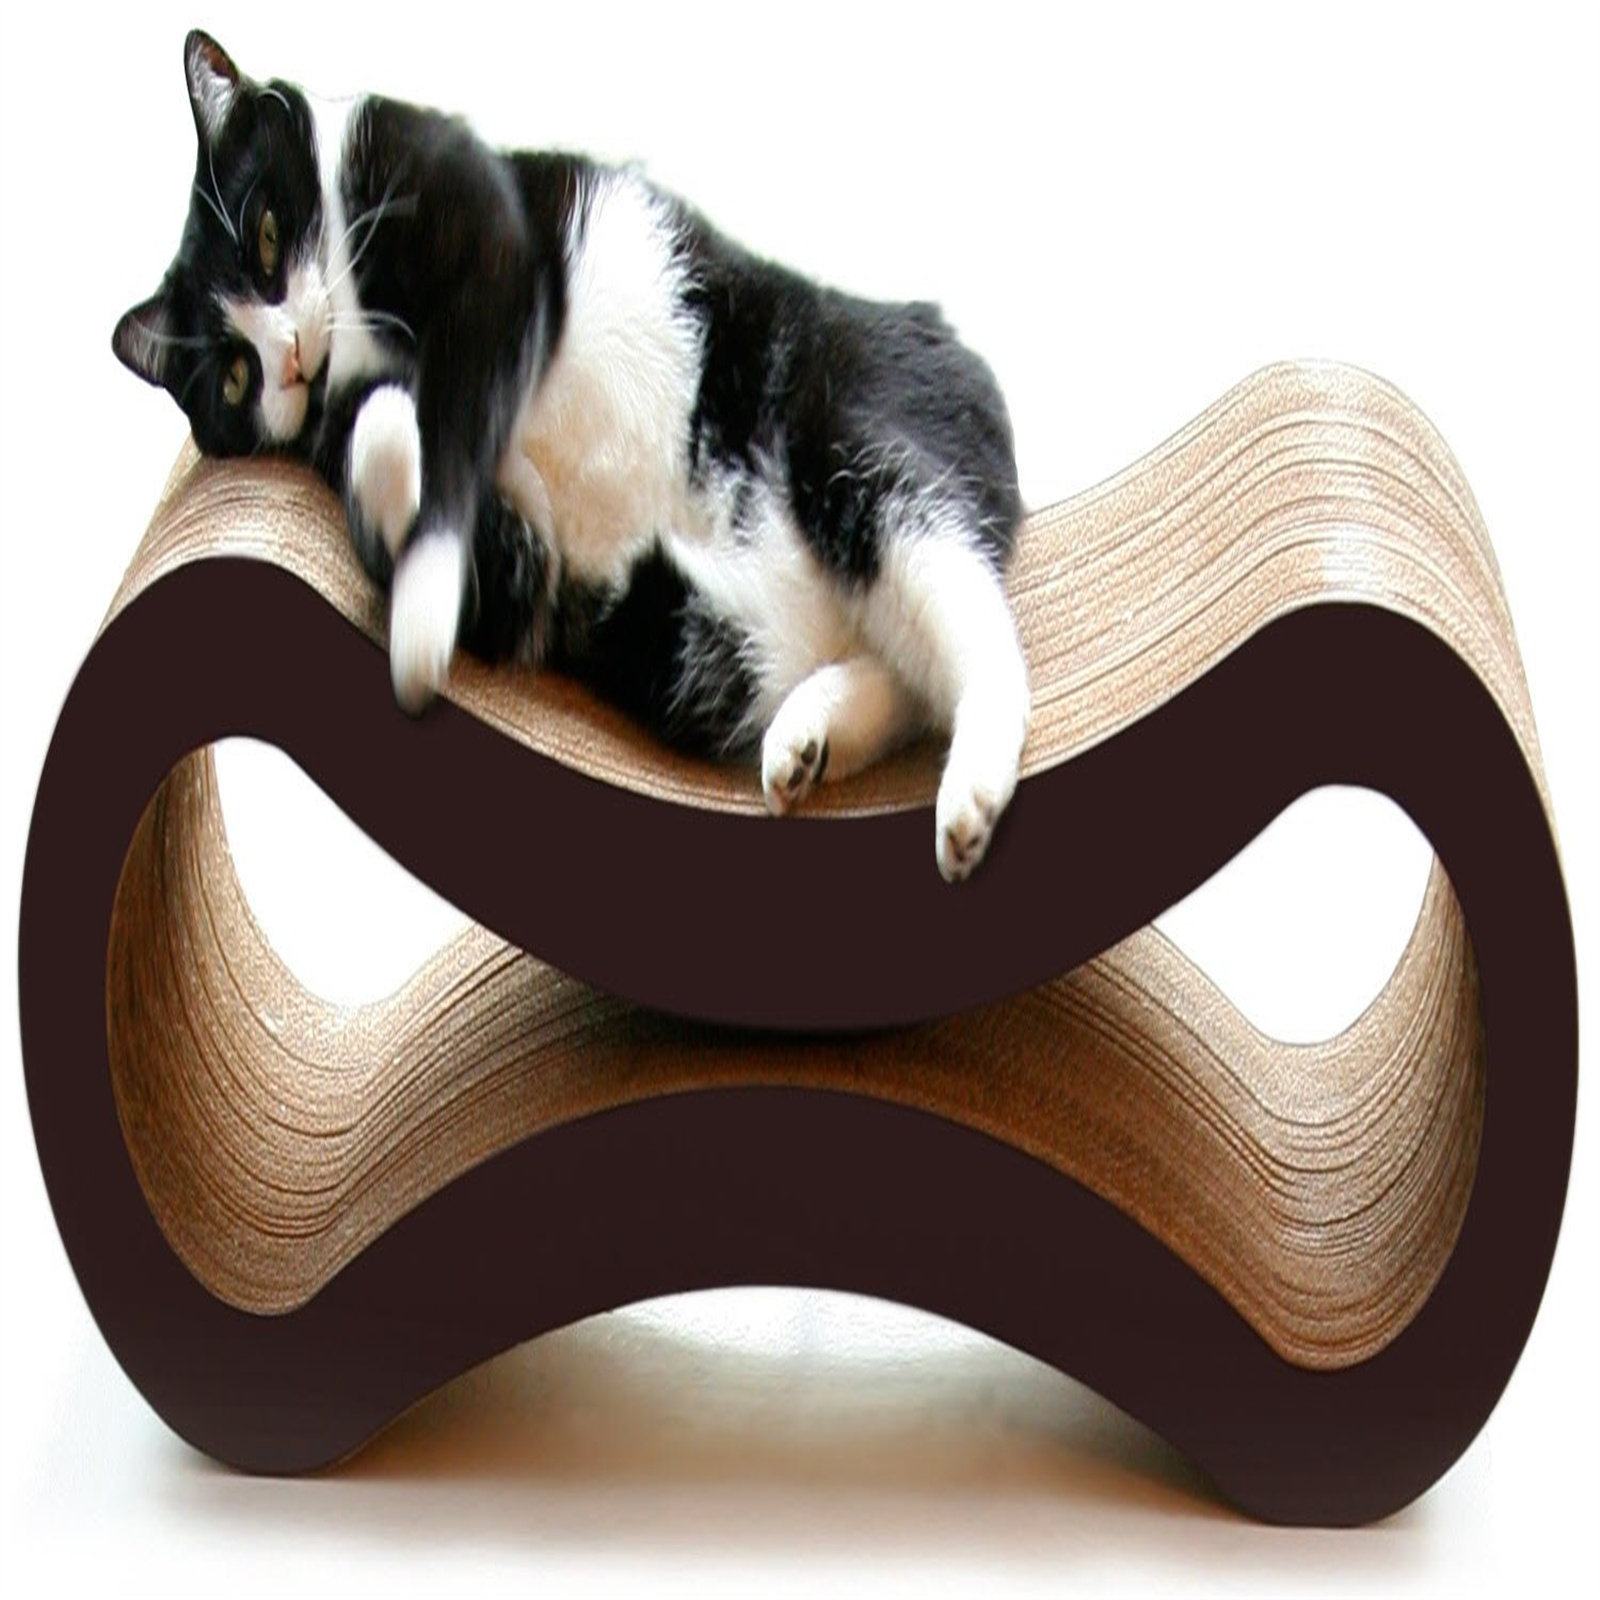 2x Cat Scratch Cardboard Catnip Scratching Pad Scratcher Lounge Sofa Bed  Post